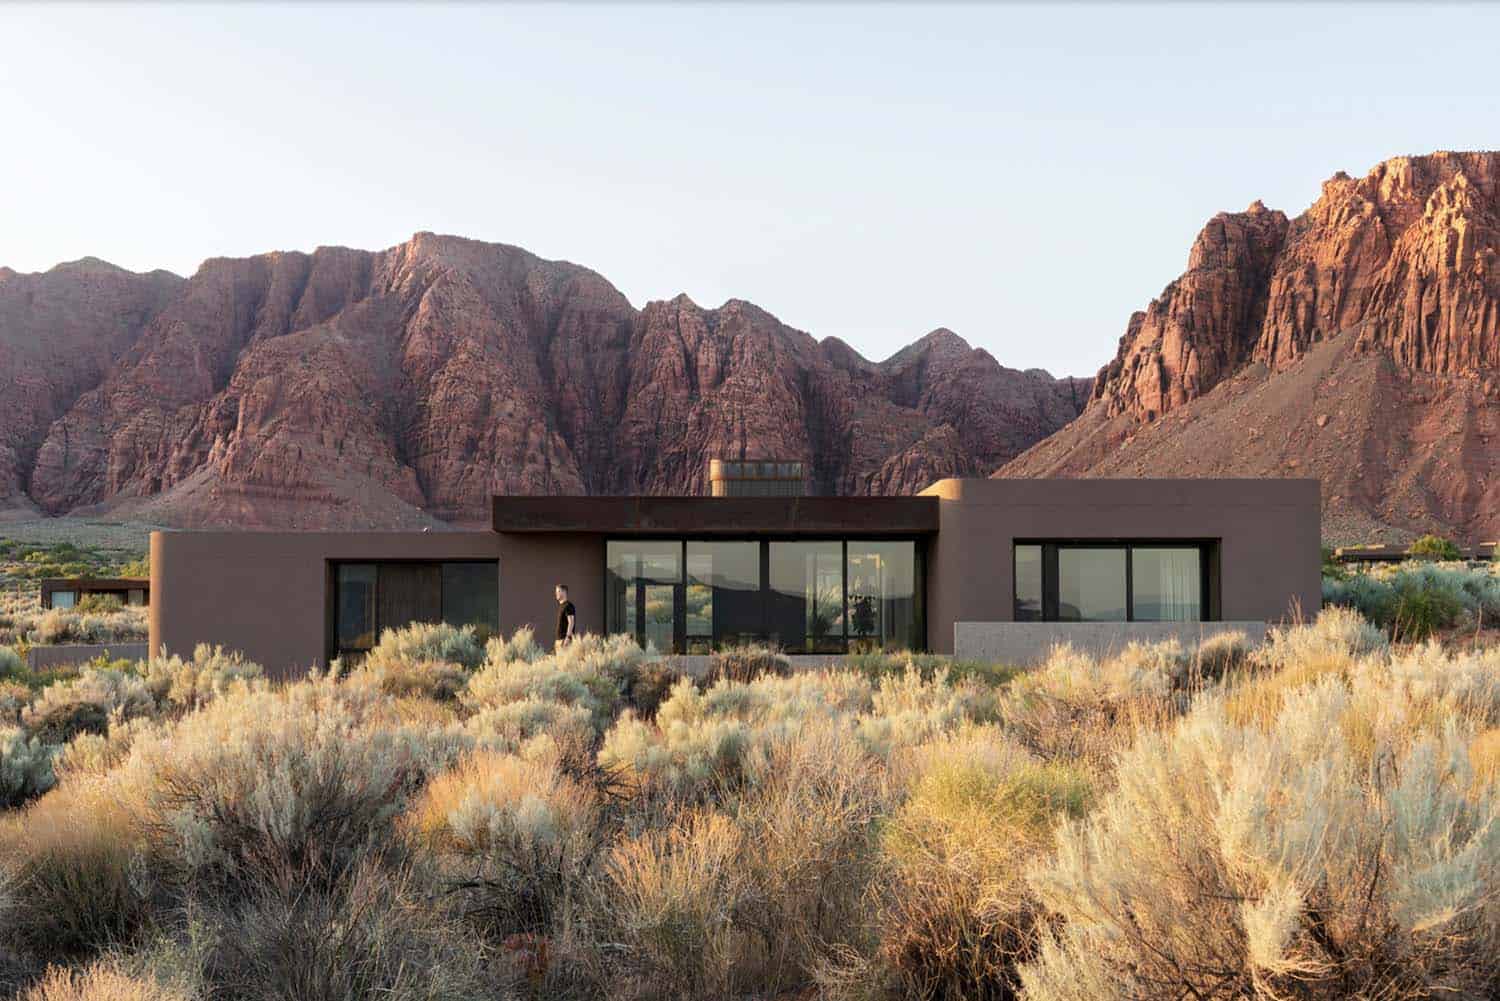 This visually striking modern home provides a refuge in the Utah desert